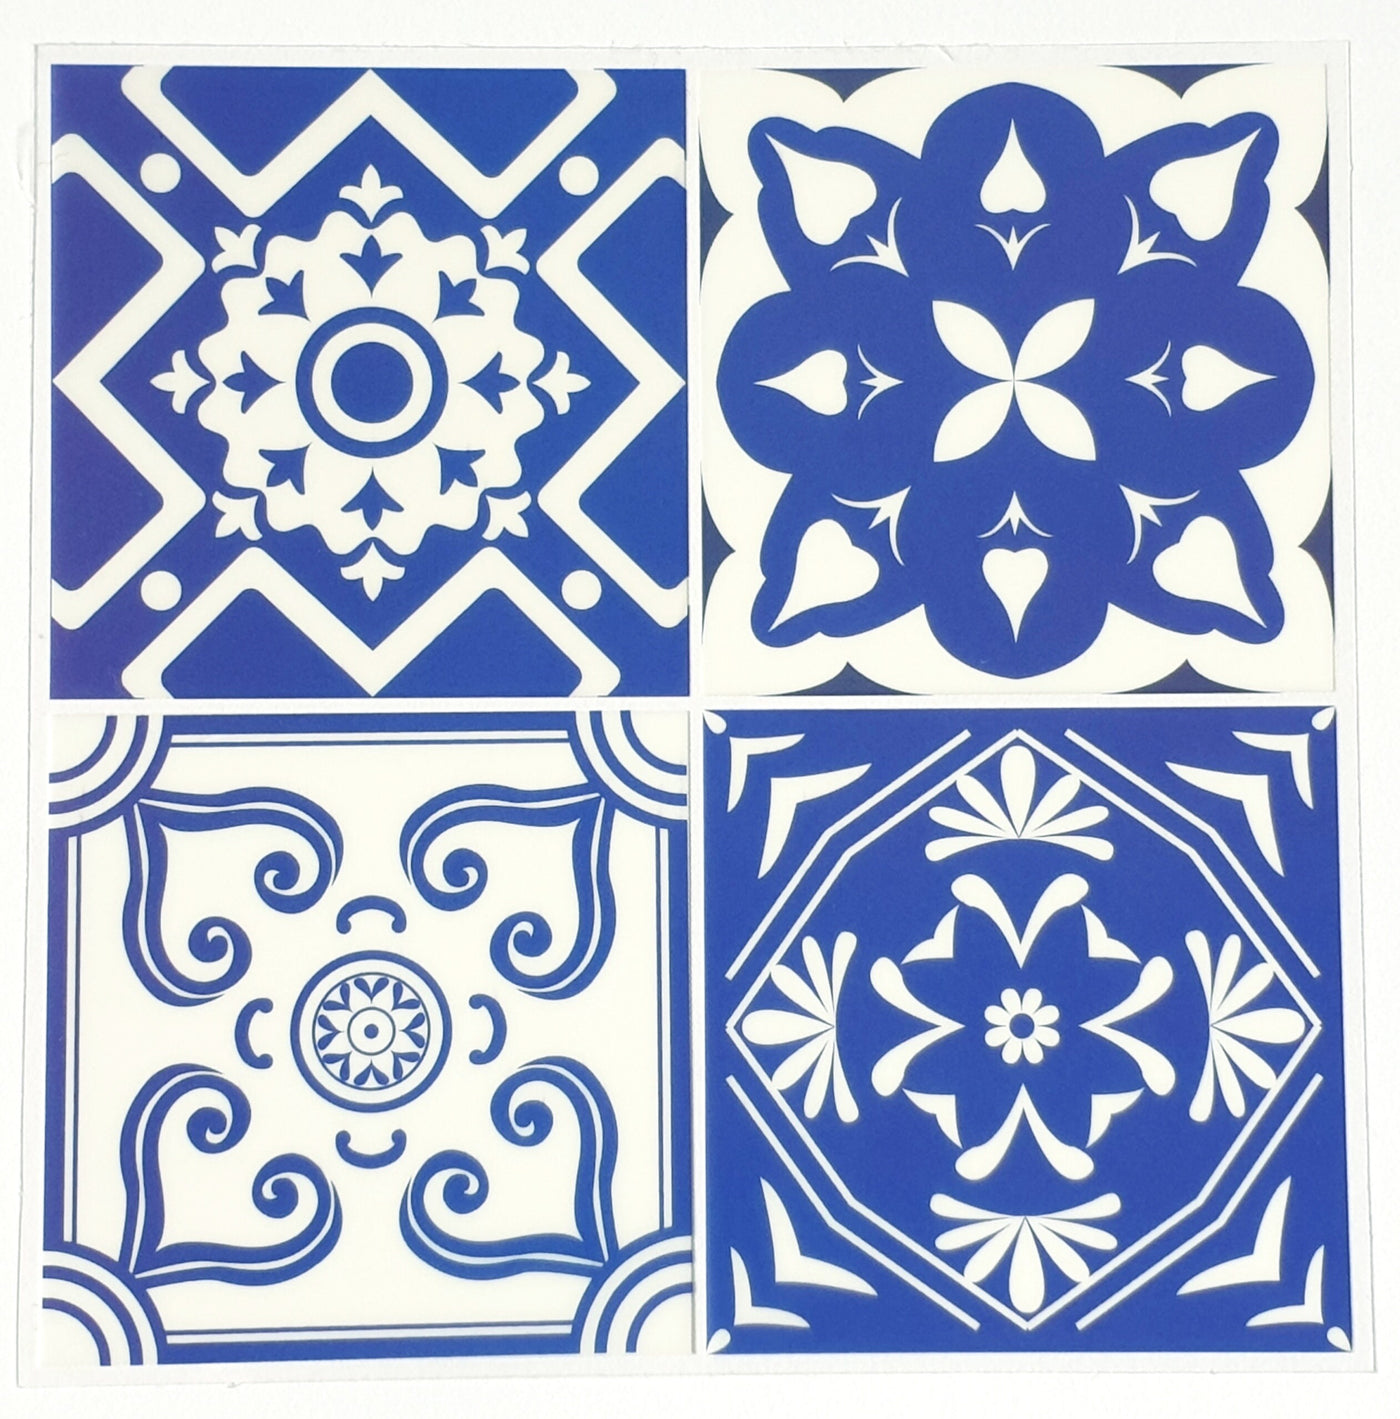 4 Blue Tile Sticker Sheet Portuguese Tile Scrapbooking Tile Decal Home Deco Sticker Set Envelope Sealer Laptop Sticker, Planner Sticker